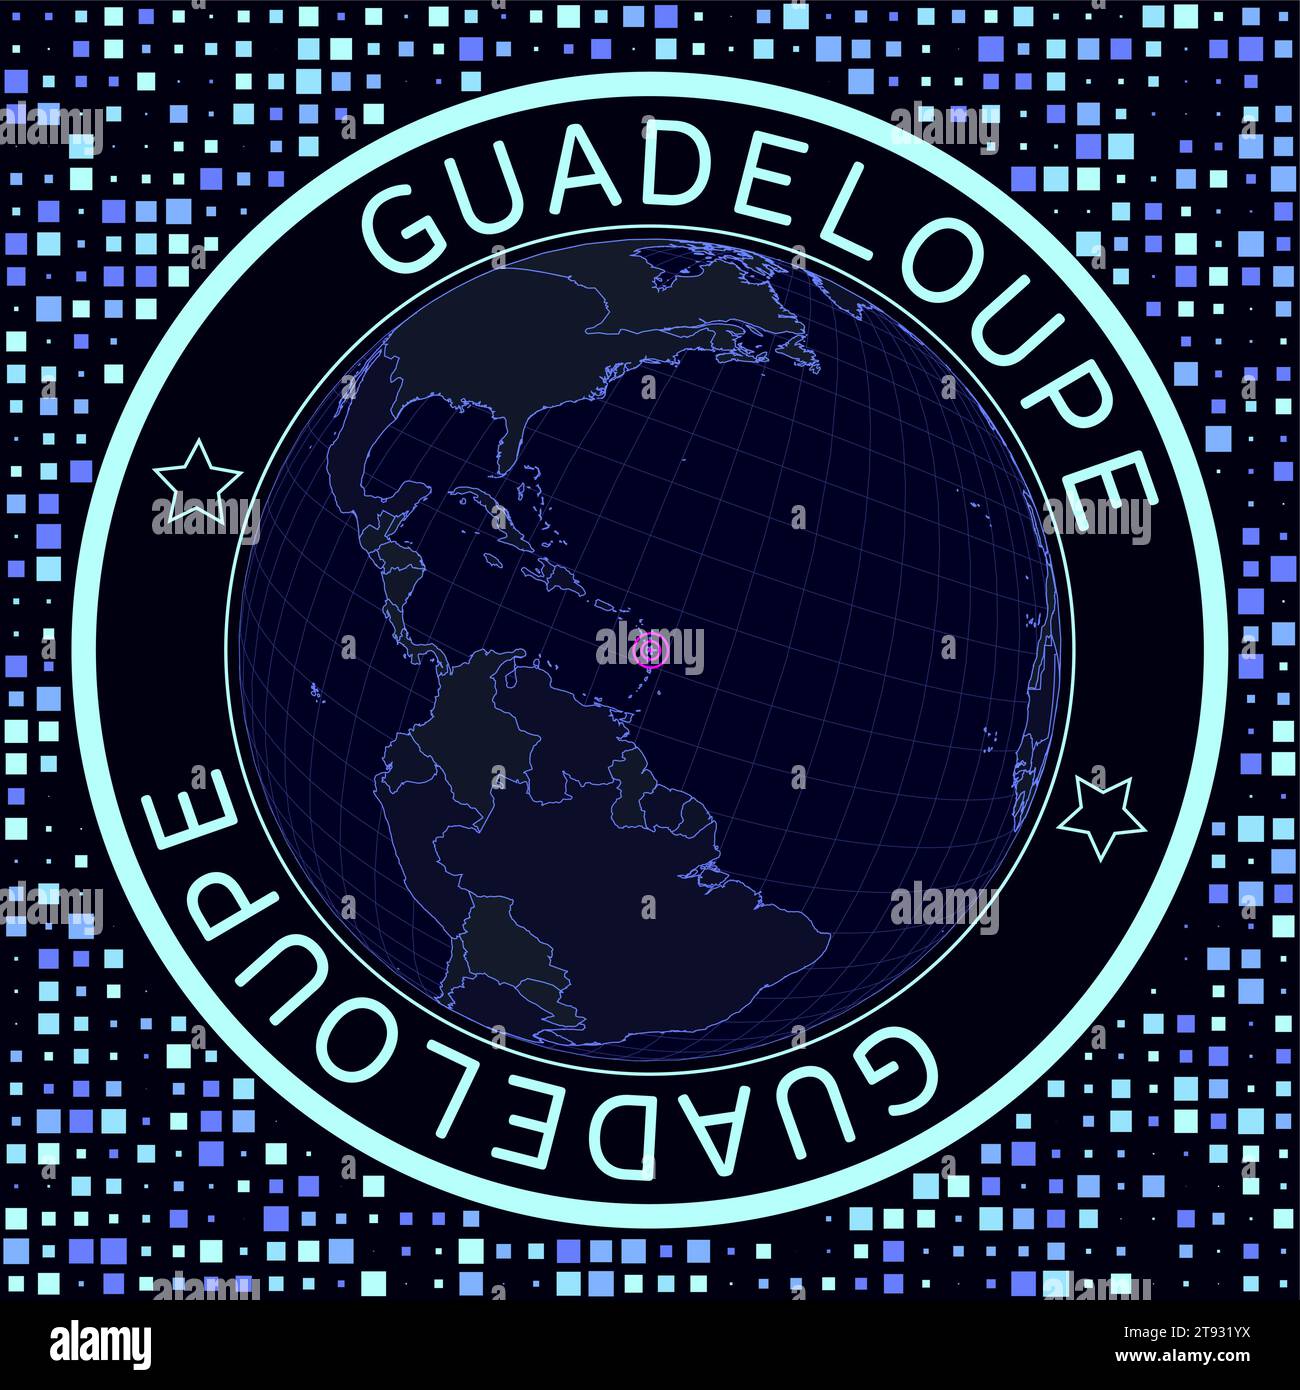 Guadeloupe sur vecteur globe. Vision satélite futuriste du monde centrée sur la Guadeloupe. Illustration géographique avec forme de pays et carrés Illustration de Vecteur